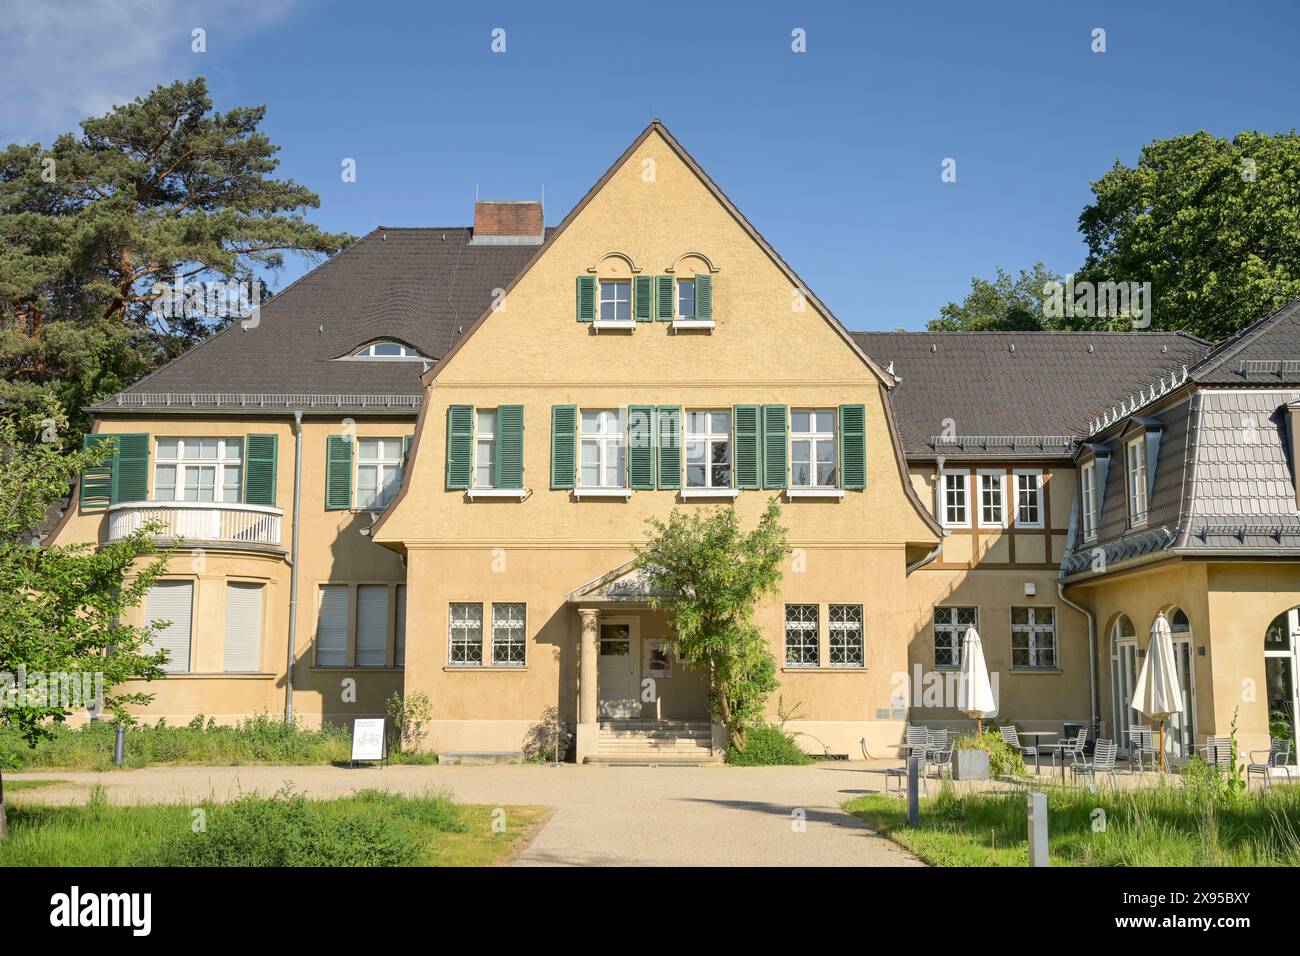 House at the Waldsee, Argentinische Allee, Zehlendorf, Steglitz-Zehlendorf, Berlin, Germany, Haus am Waldsee, Argentinische Allee, Zehlendorf, Steglit Stock Photo